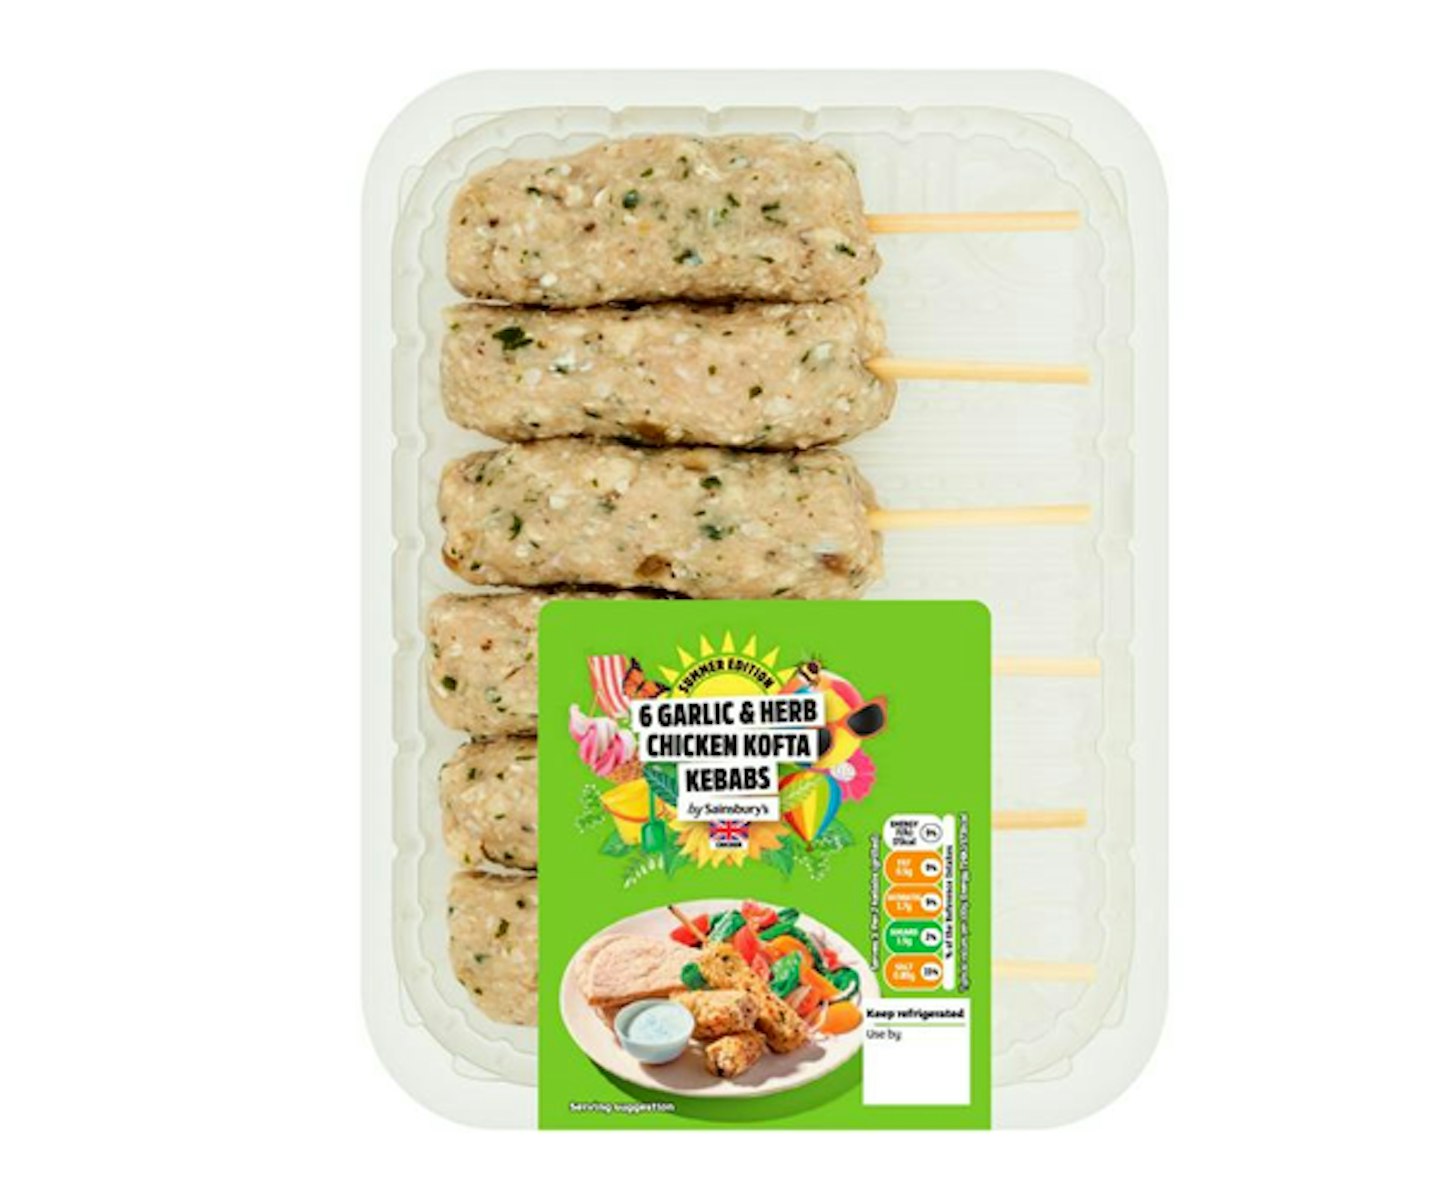 Sainsbury's Summer Edition British Chicken Garlic & Herb Kofta Kebabs